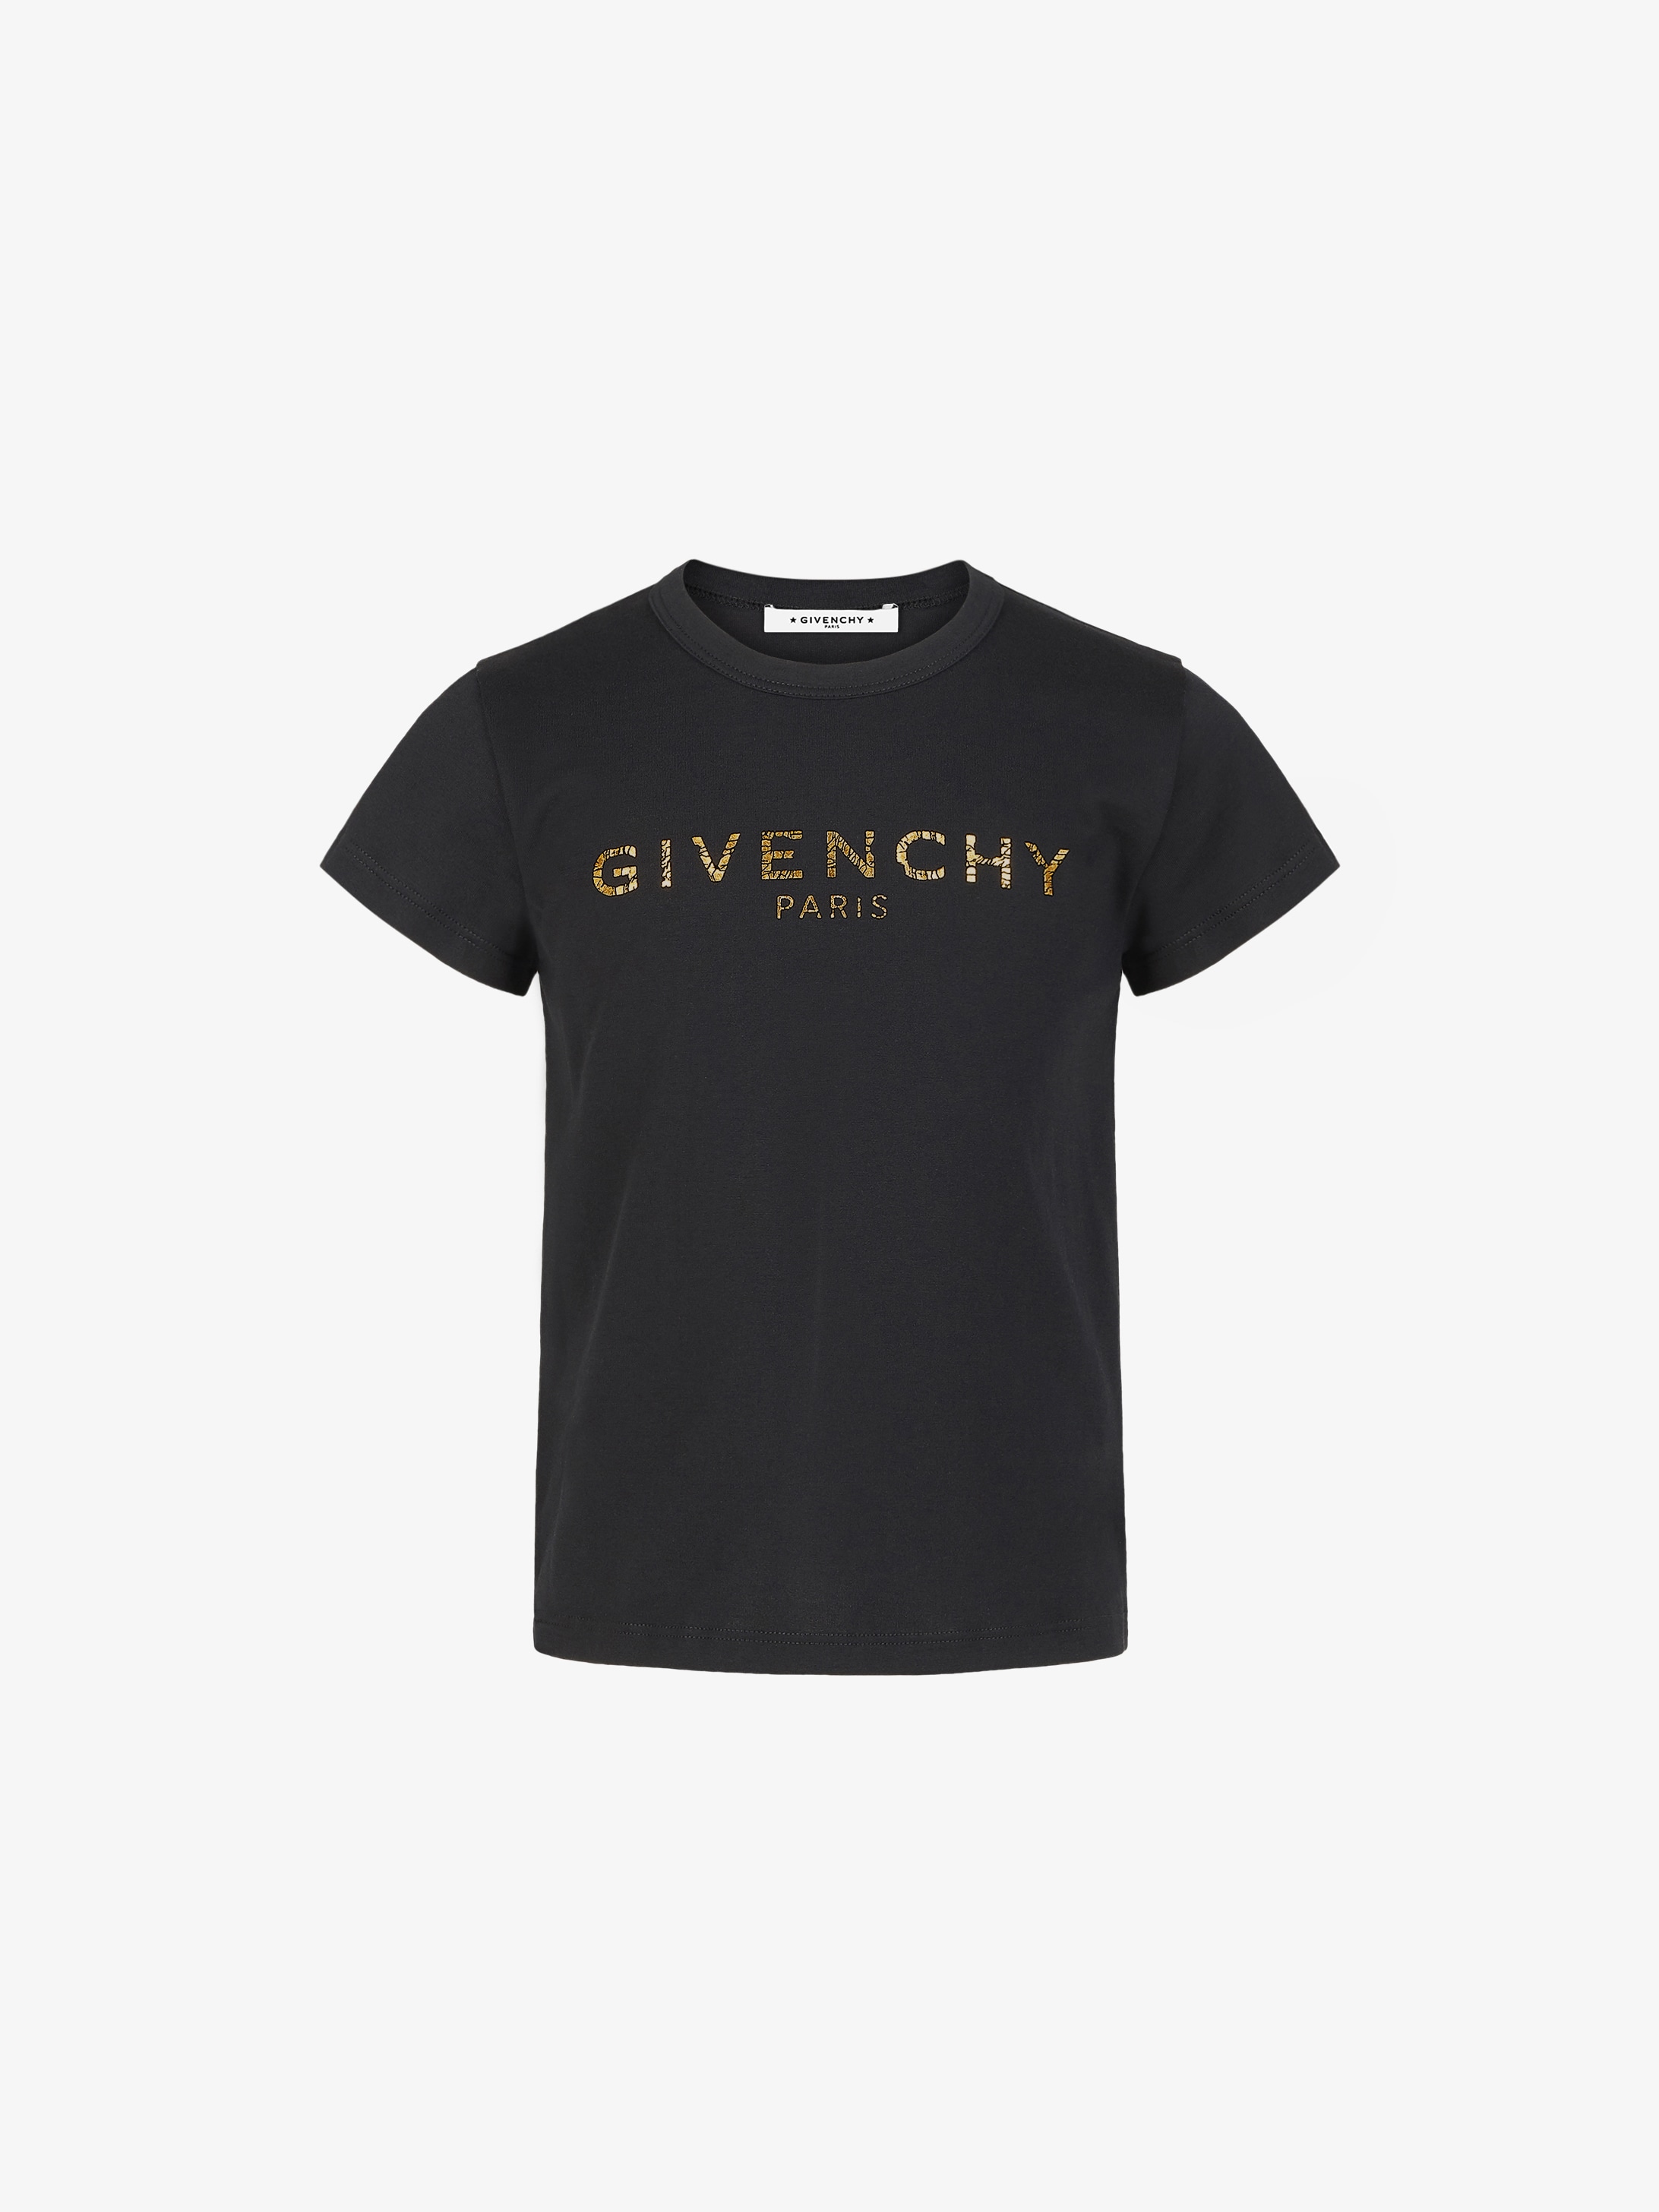 GIVENCHY T-shirt | GIVENCHY Paris